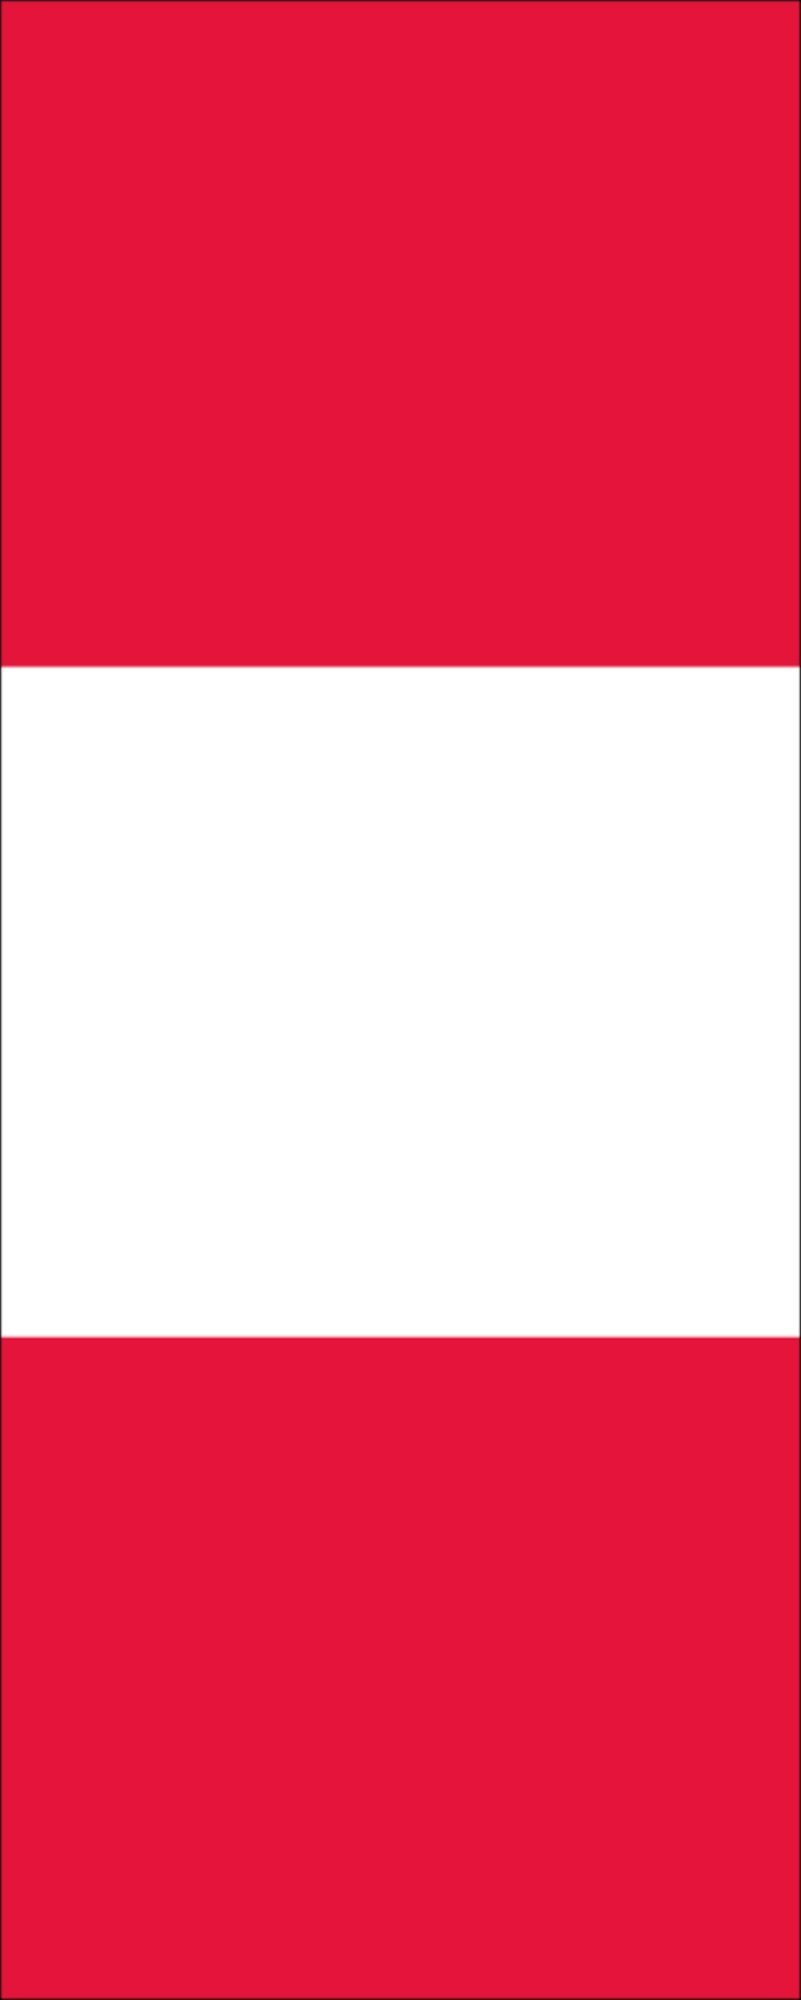 flaggenmeer Flagge Peru 160 g/m² Hochformat